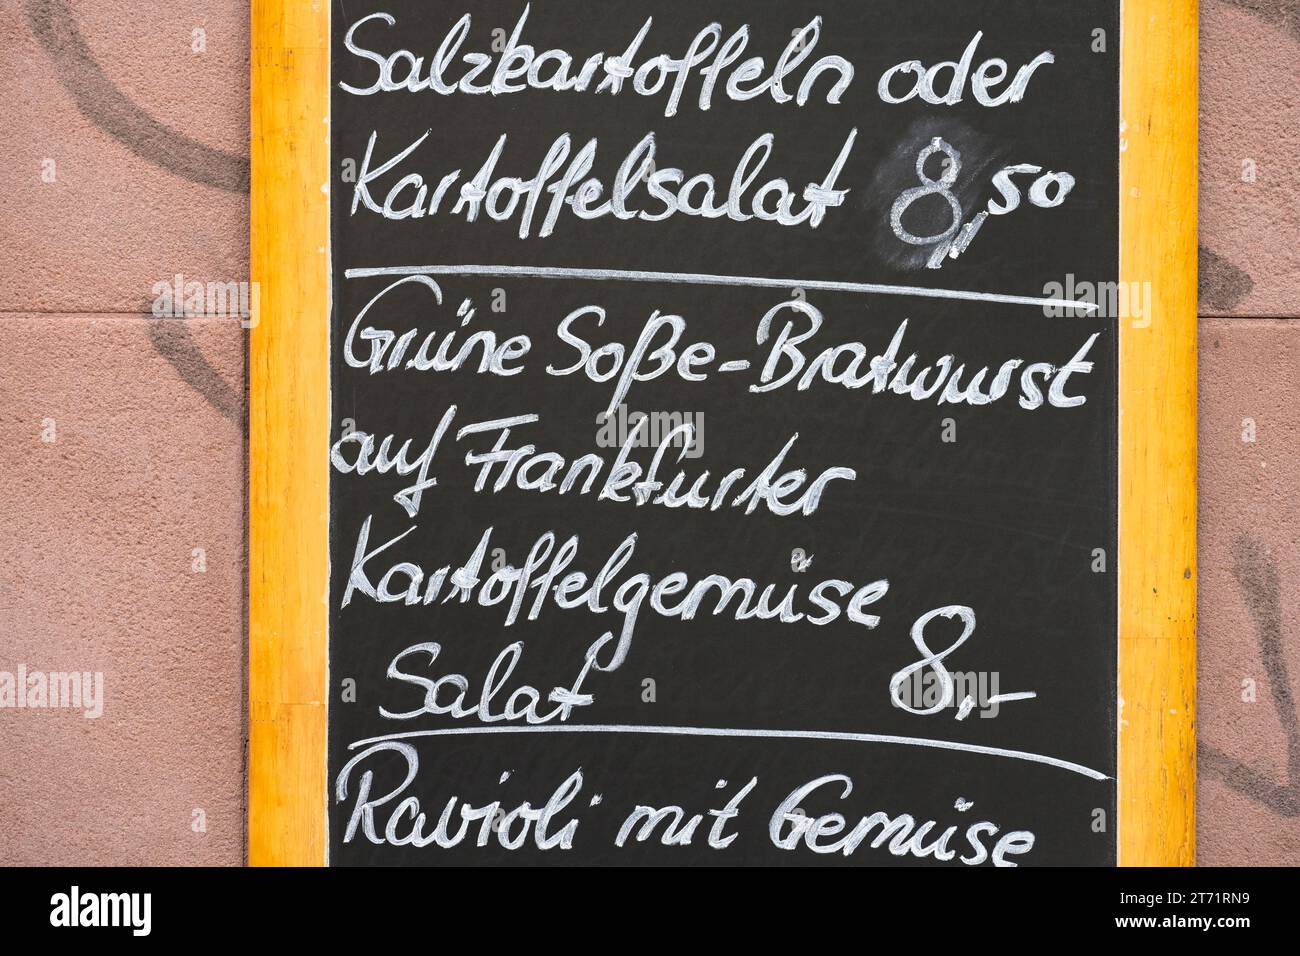 Grüne Soße Bratwurst, Kartoffeln, Werbetafel für Essen, Frankfurt, Hessen, Deutschland Stock Photo